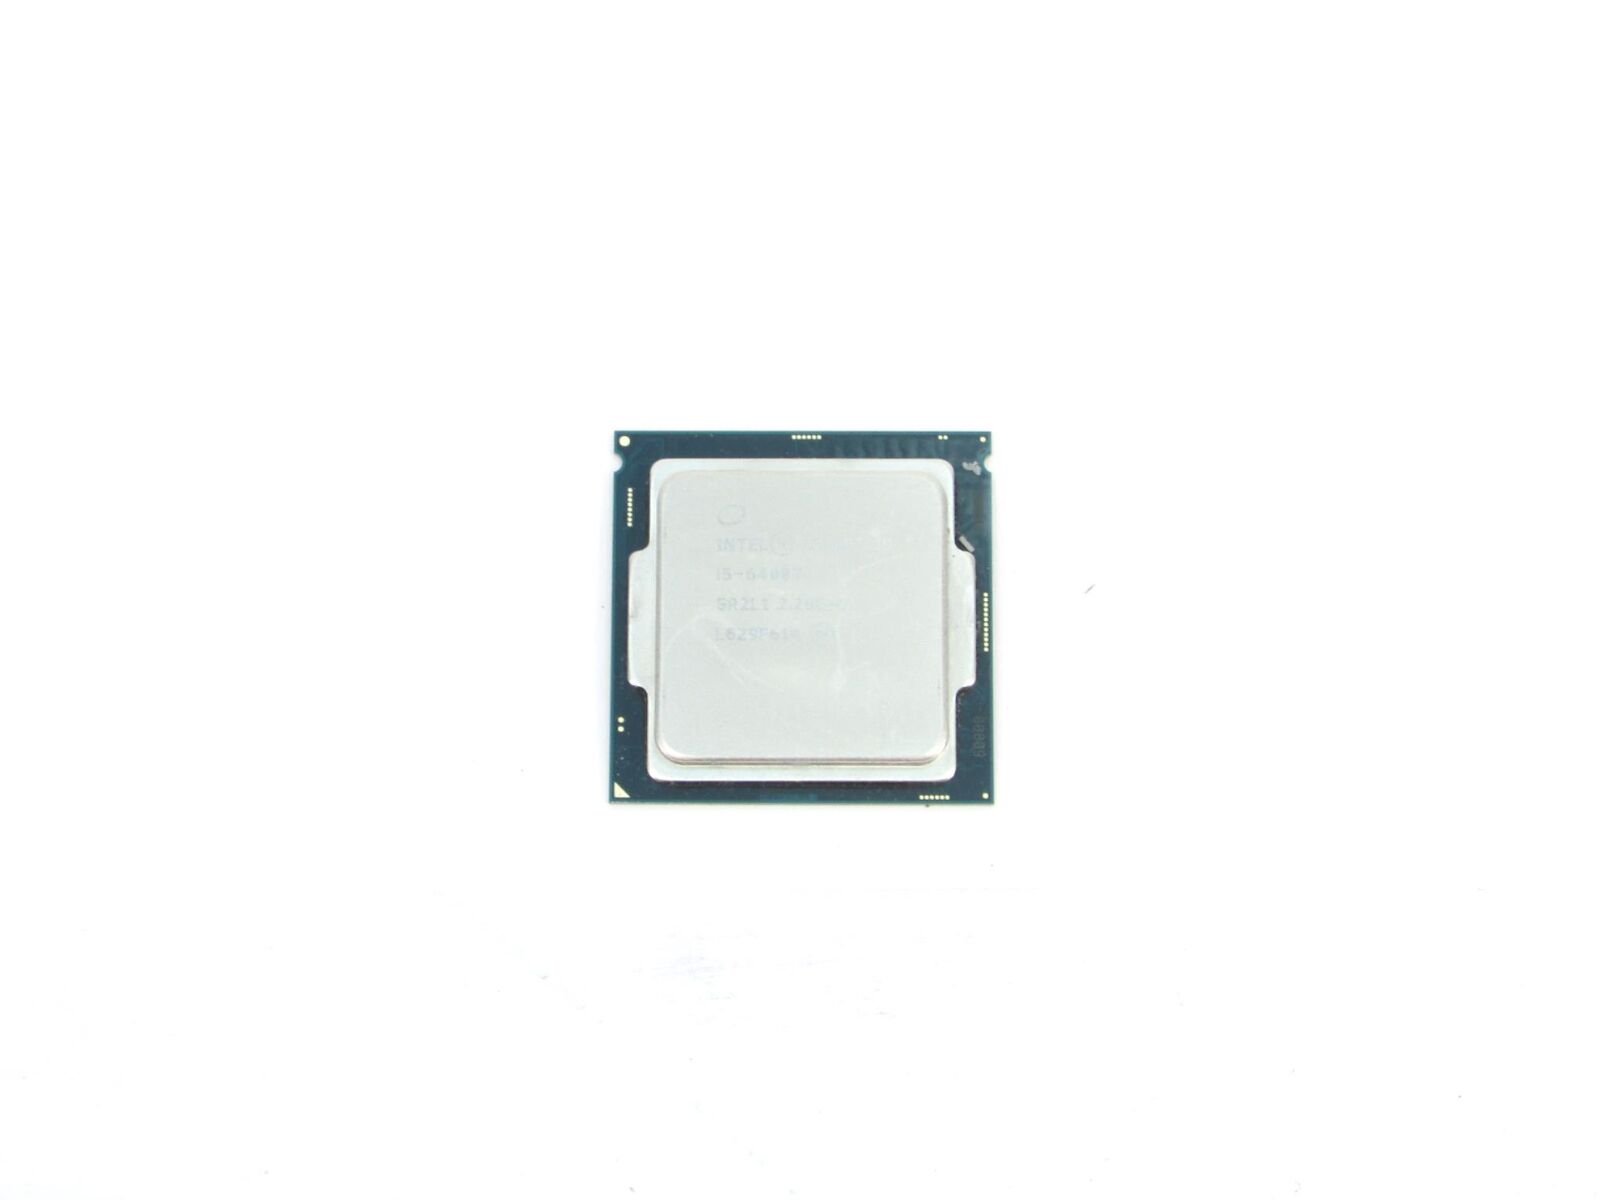 Intel Core i5-6400T 2.20 GHz Quad Core FCLGA1151 6MB Cache Processor CPU